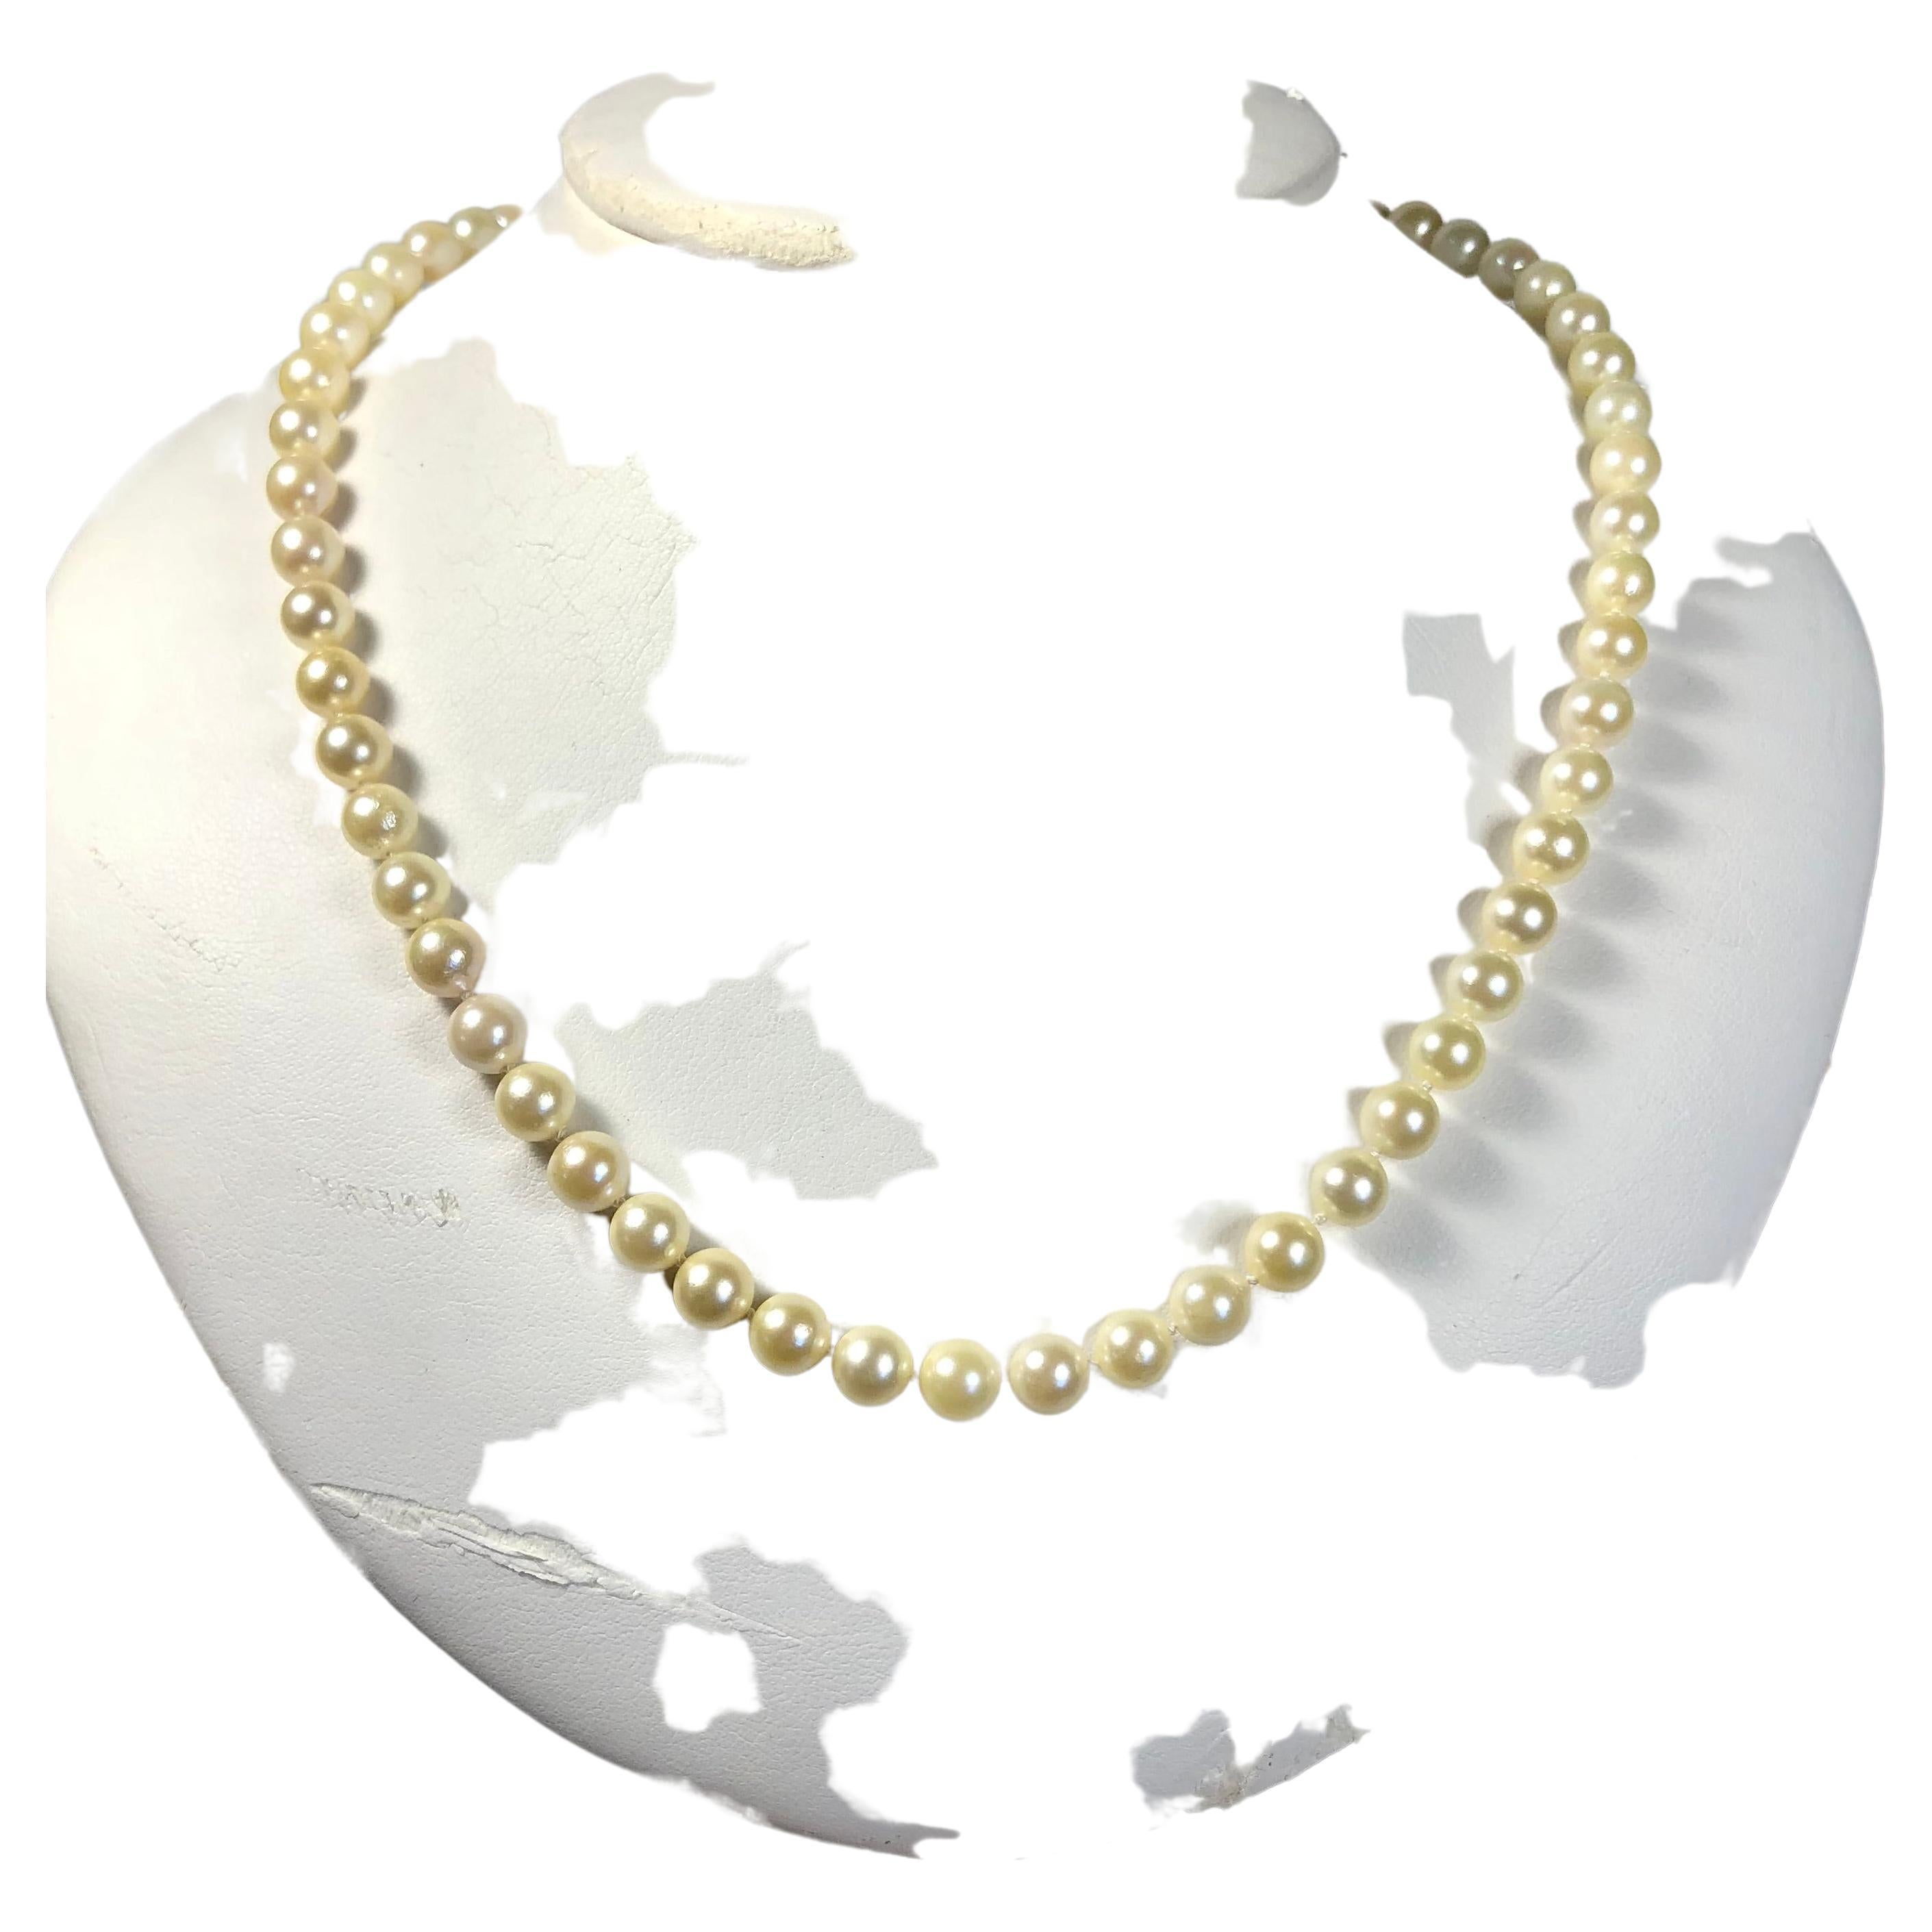 Nous vous proposons ici un collier classique de perles Akoya d'eau salée de couleur crème pâle !
Type de perle :  Véritable perle de culture d'eau de mer Akoya.
Perle Origine : Japon
Perle Couleur principale : Crème claire
Traitement des perles :